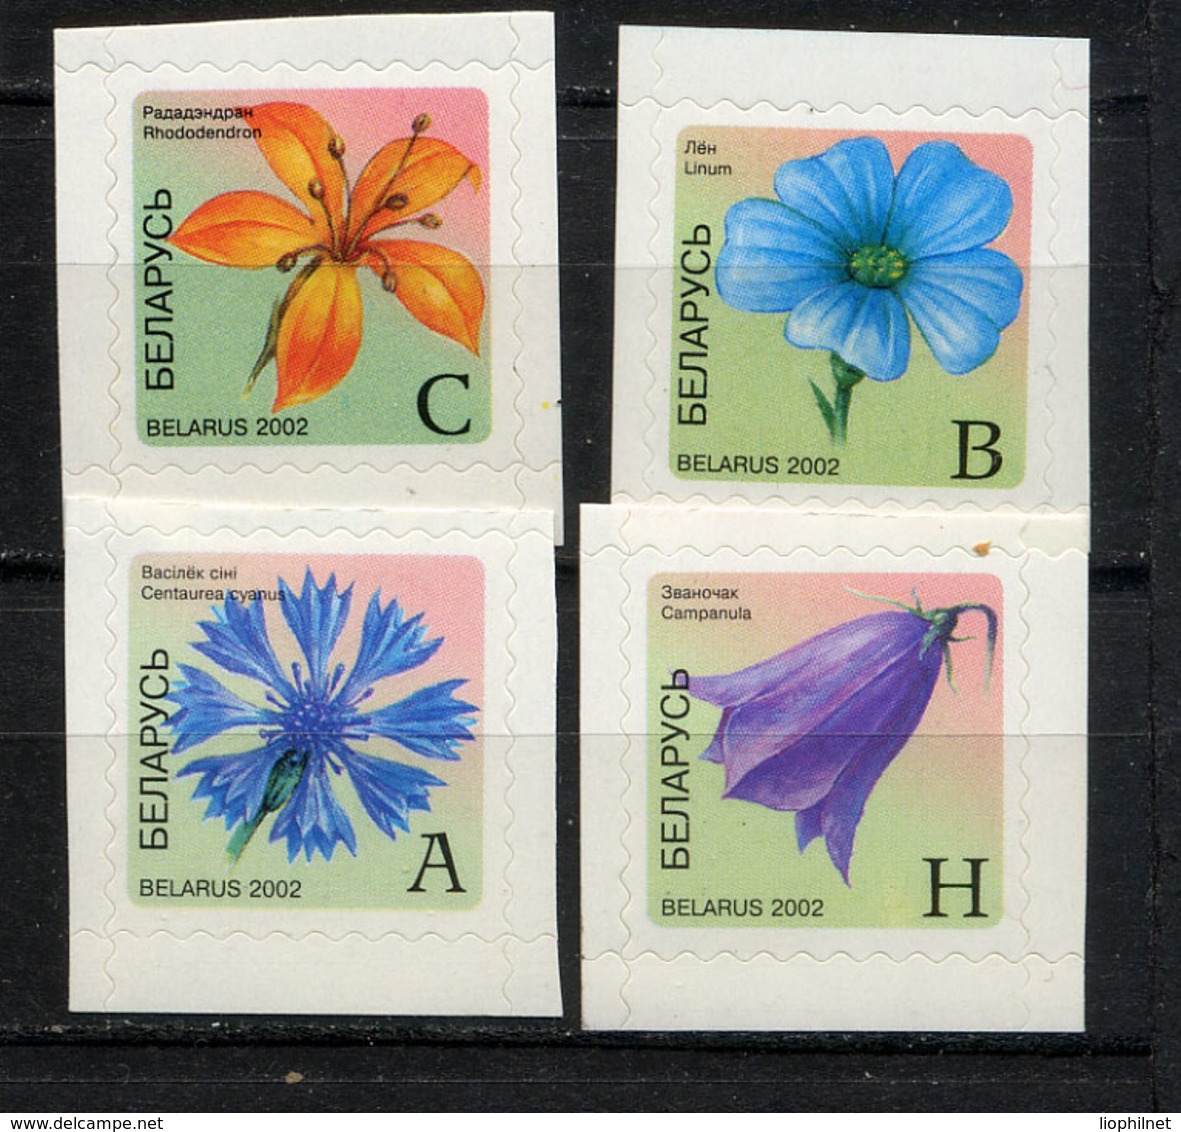 BIELORUSSIE BELARUS 2002, FLEURS / FLOWERS, Autocollants, 4 Valeurs, Neufs / Mint. R1795 - Belarus